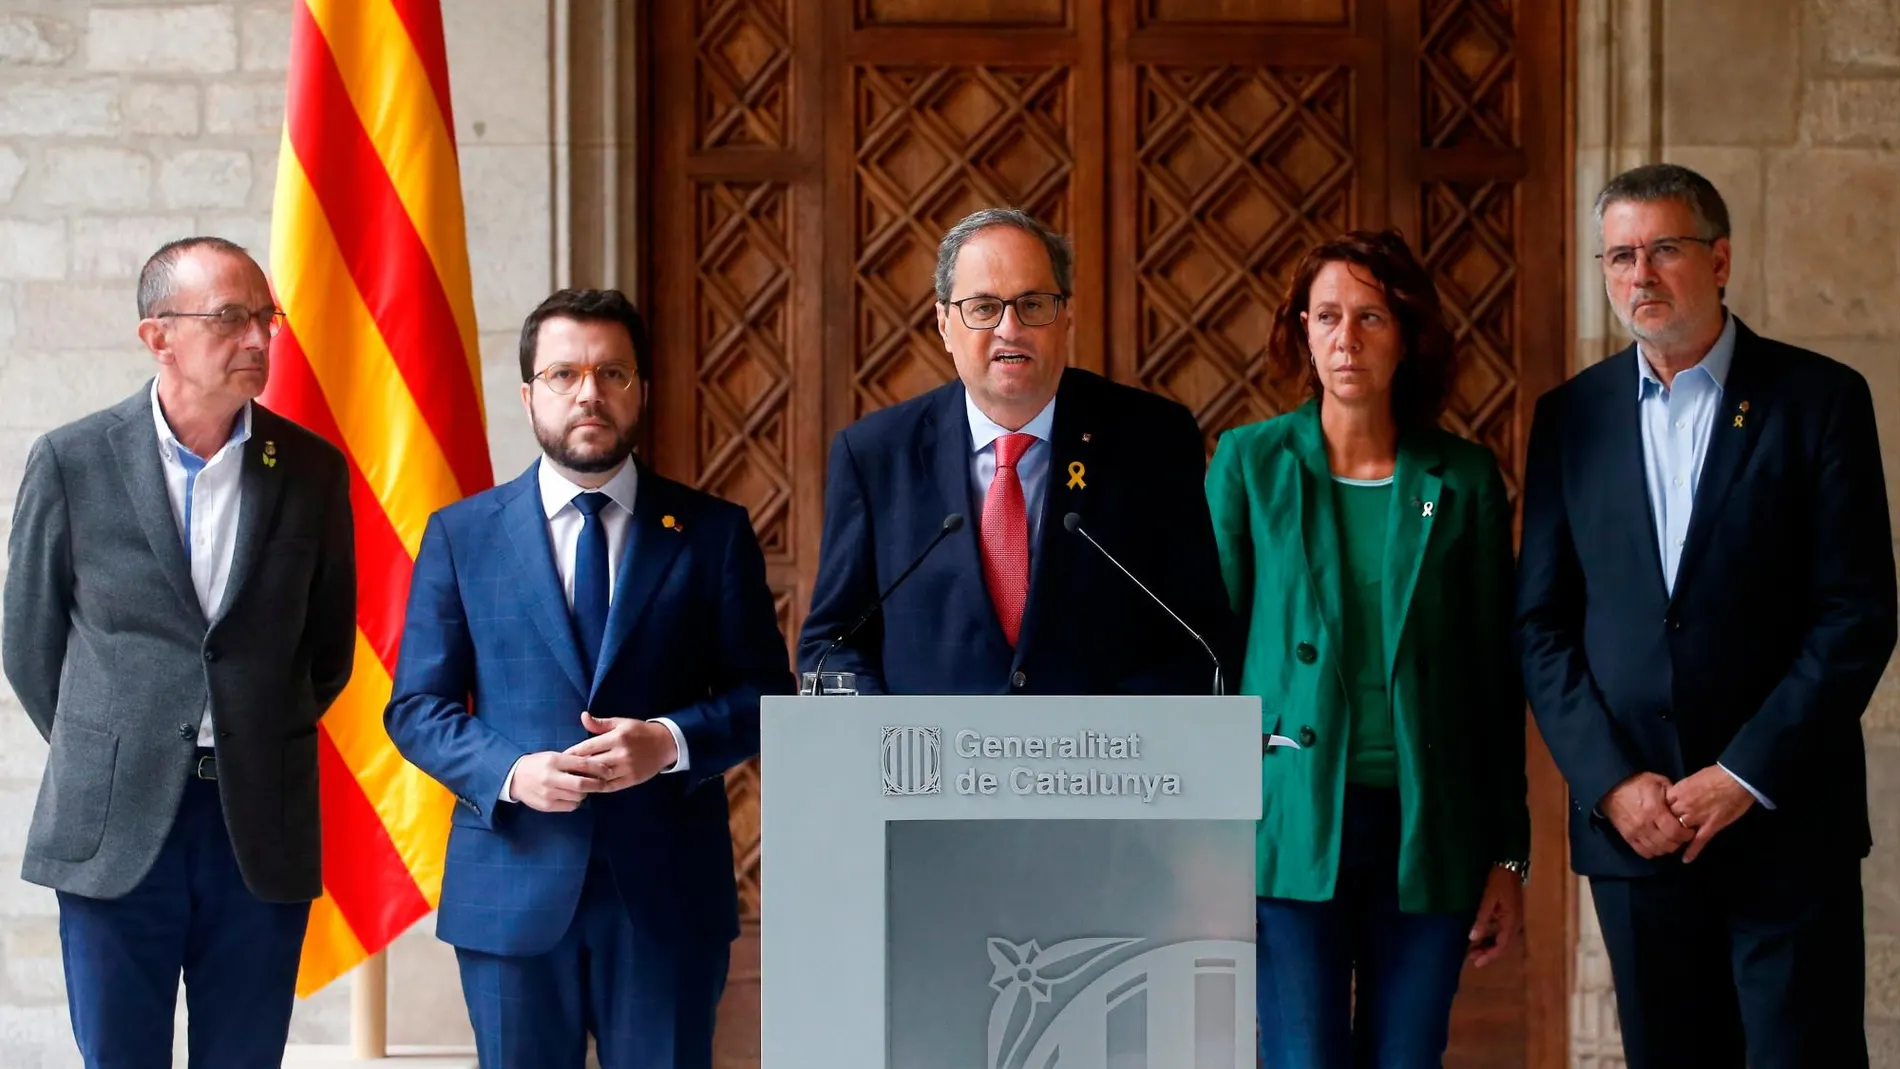 El presidente de la Generalitat, Quim Torra, junto a su vicepresidente, Pere Aragonés (2i), y los alcaldes de Girona, Marta Madrenas (2d), Tarragona, Pau Ricomà (d), y Lleida, Miquel Pueyo (i), durante su comparecencia.